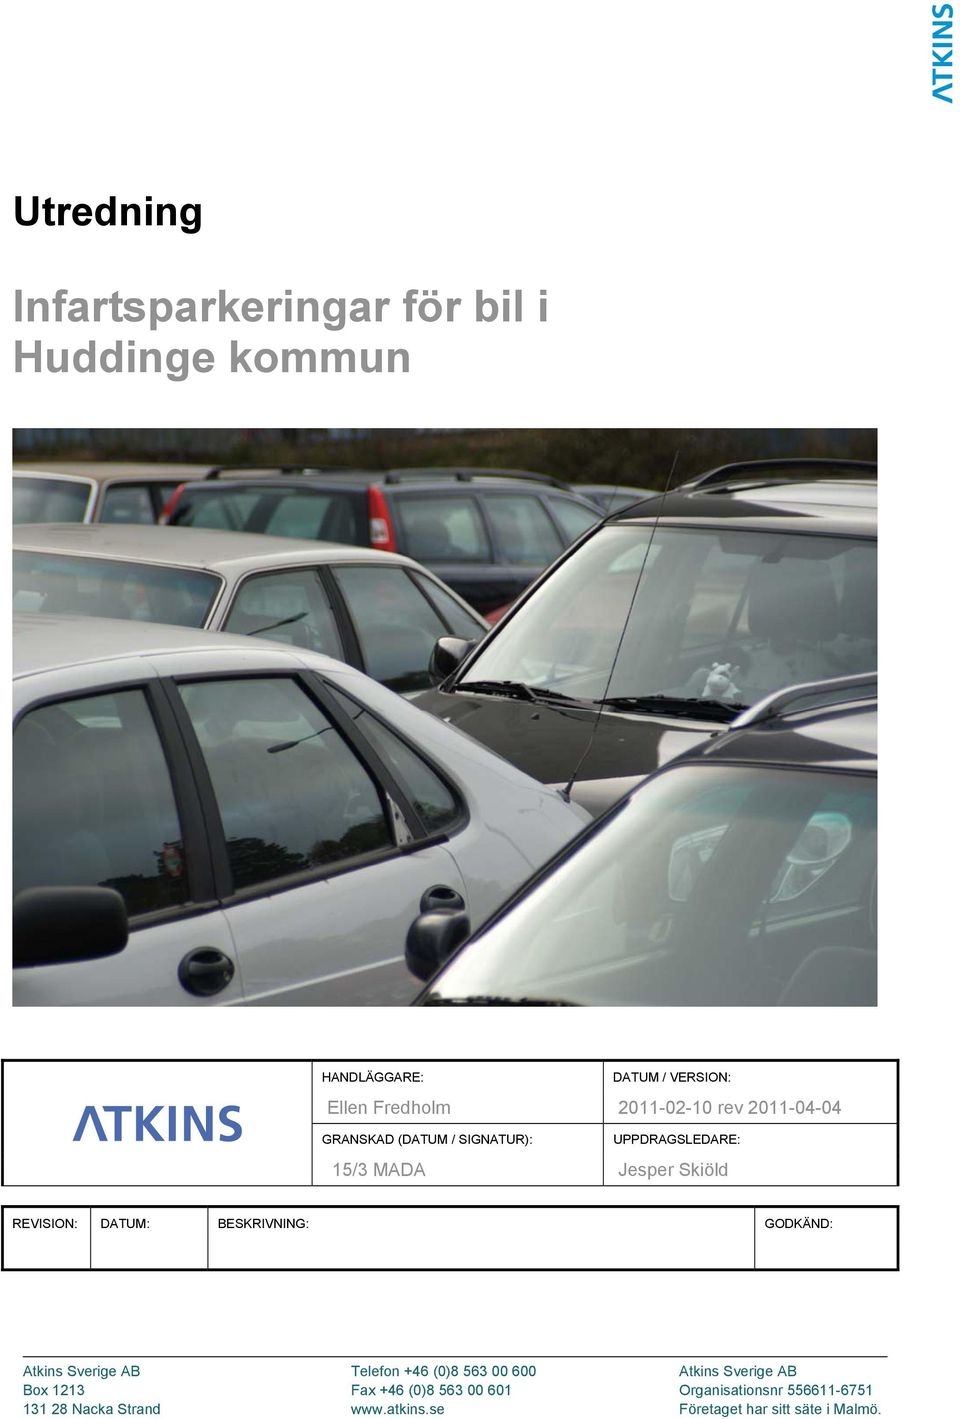 DATUM: BESKRIVNING: GODKÄND: Atkins Sverige AB Telefon +46 (0)8 563 00 600 Atkins Sverige AB Box 1213 Fax